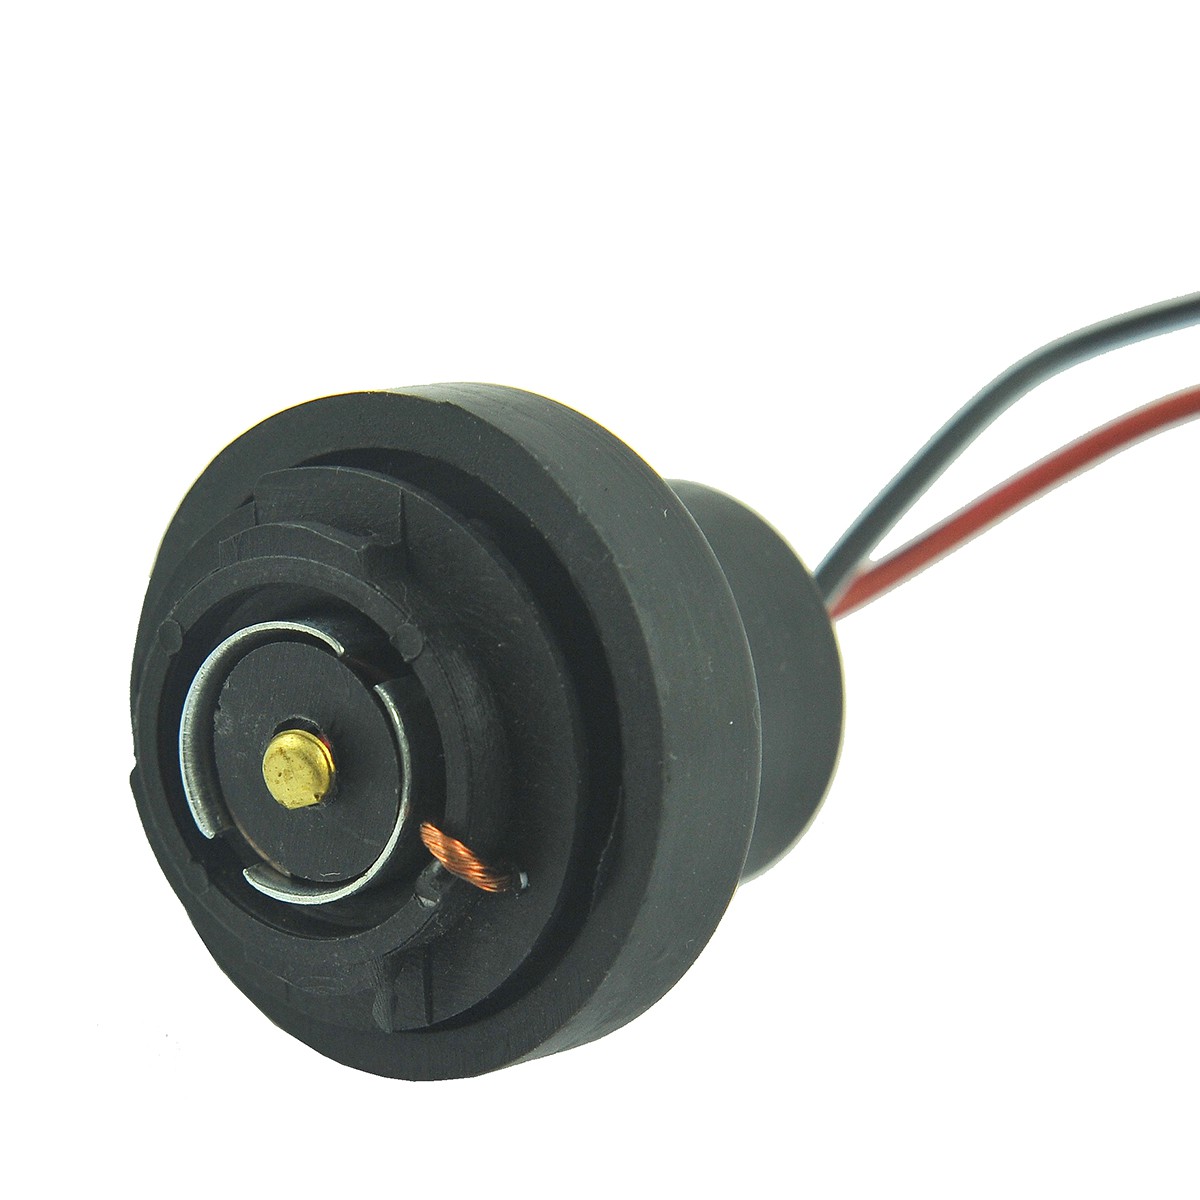 Bulb socket / Kubota L175/L185/L225/L235/L1500/L1501/L1801/L2000/L2201/L2808/L3408 / TA040-99120 / 5-07-121-01